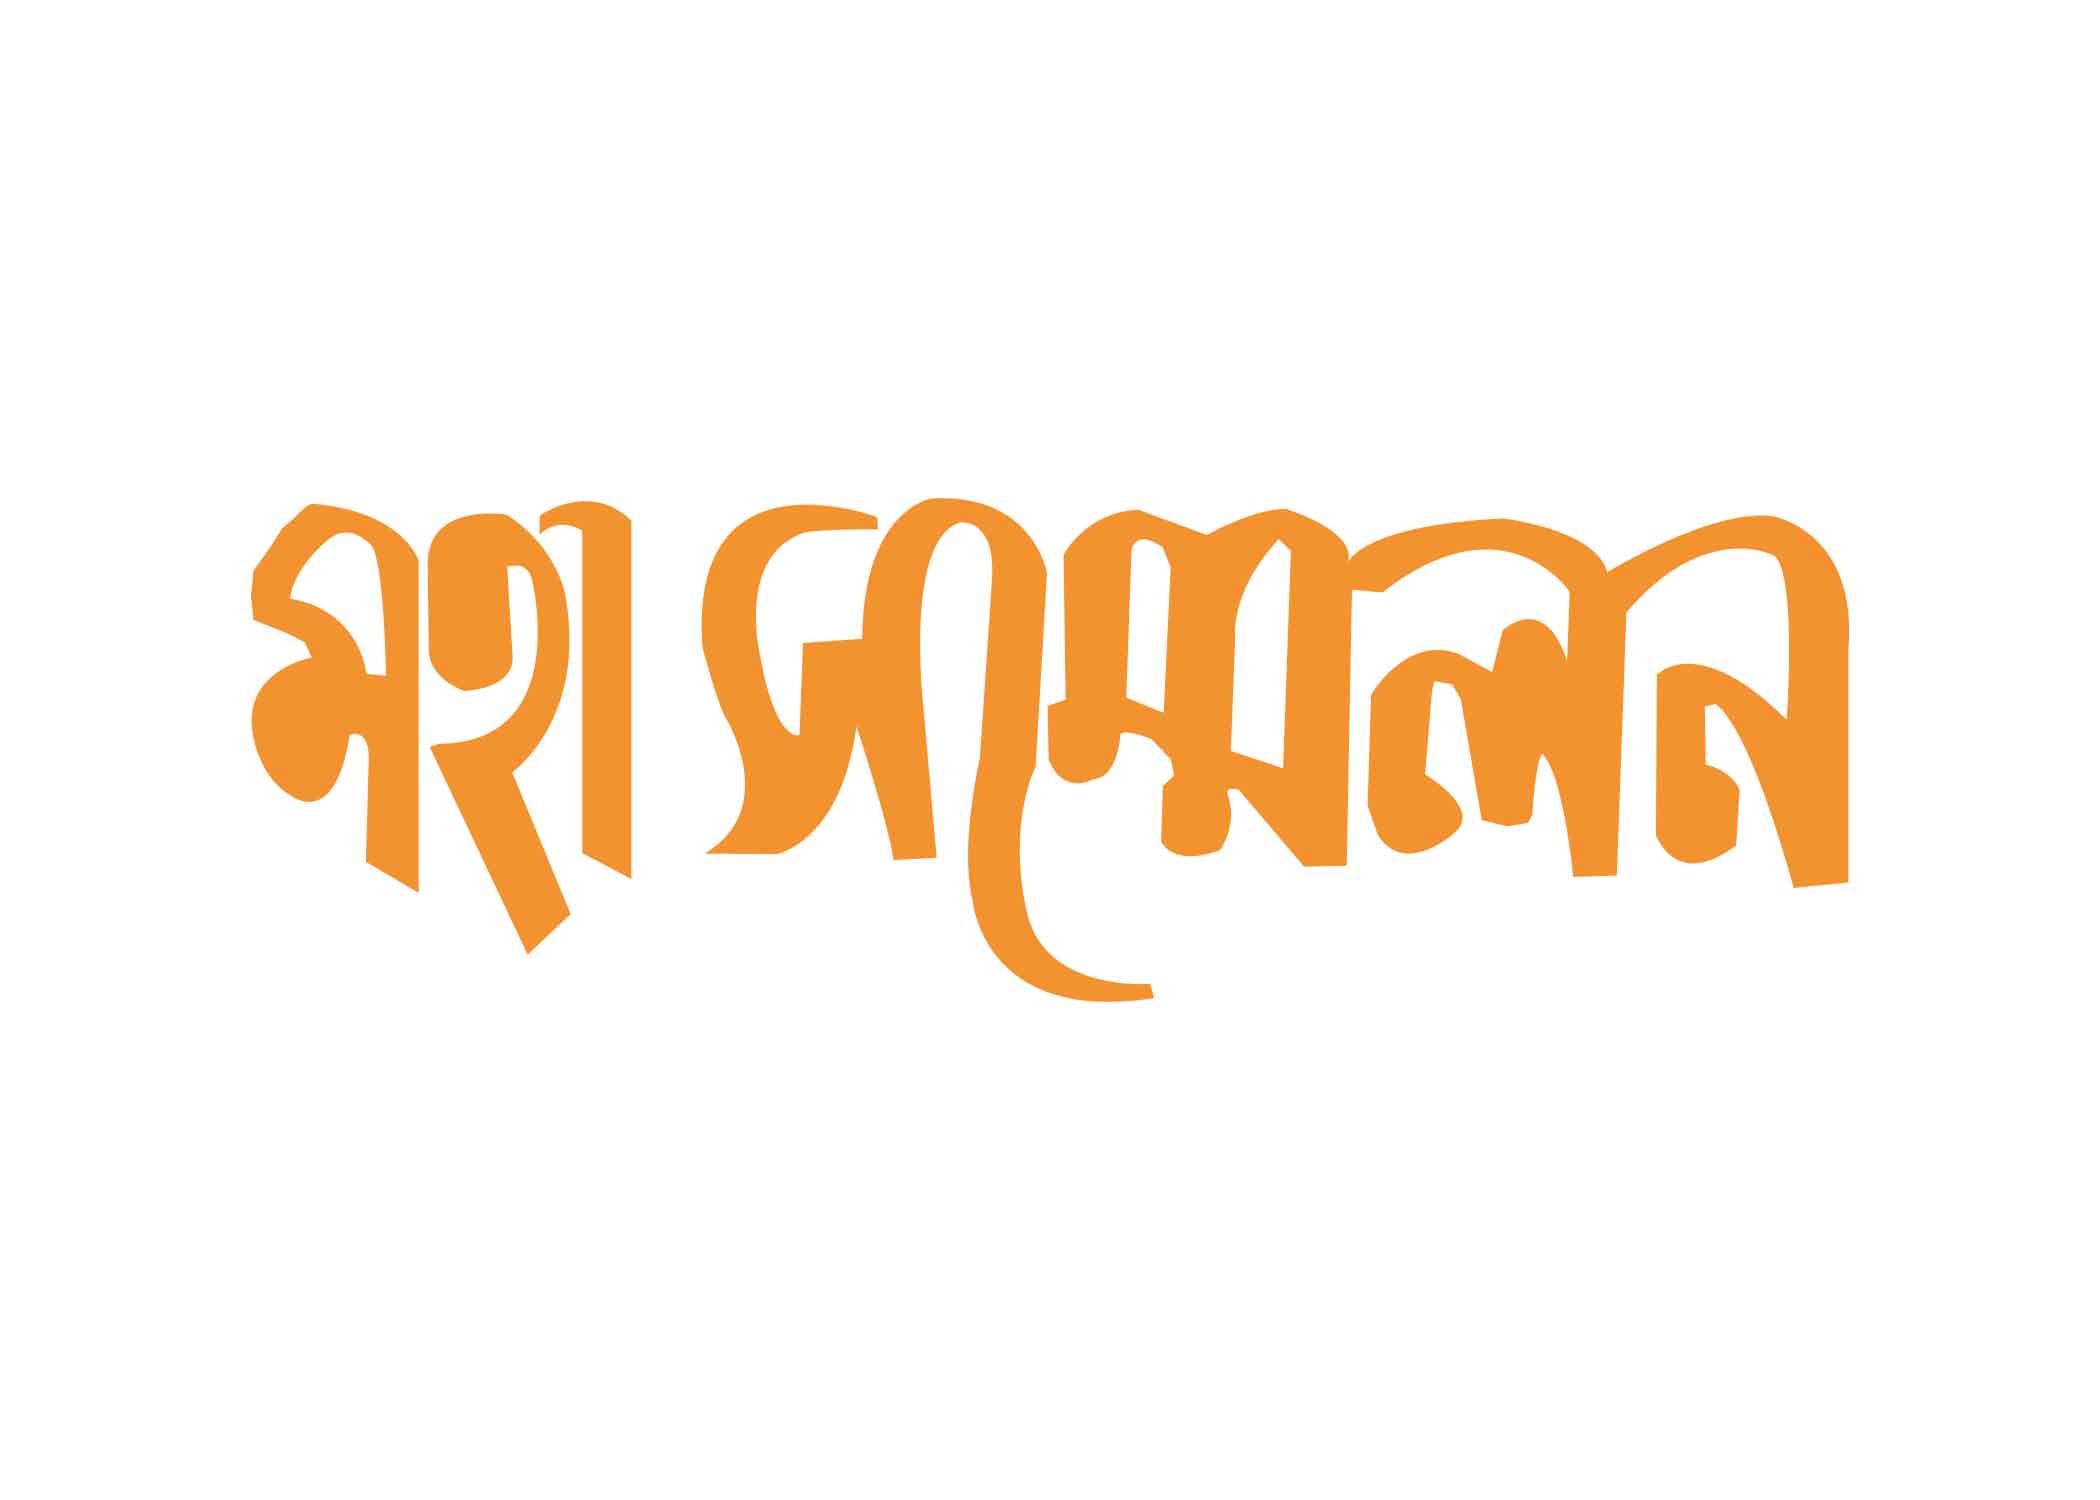 মহা সম্মেলন টাইপোগ্রাফি । Bangla Typography PNG